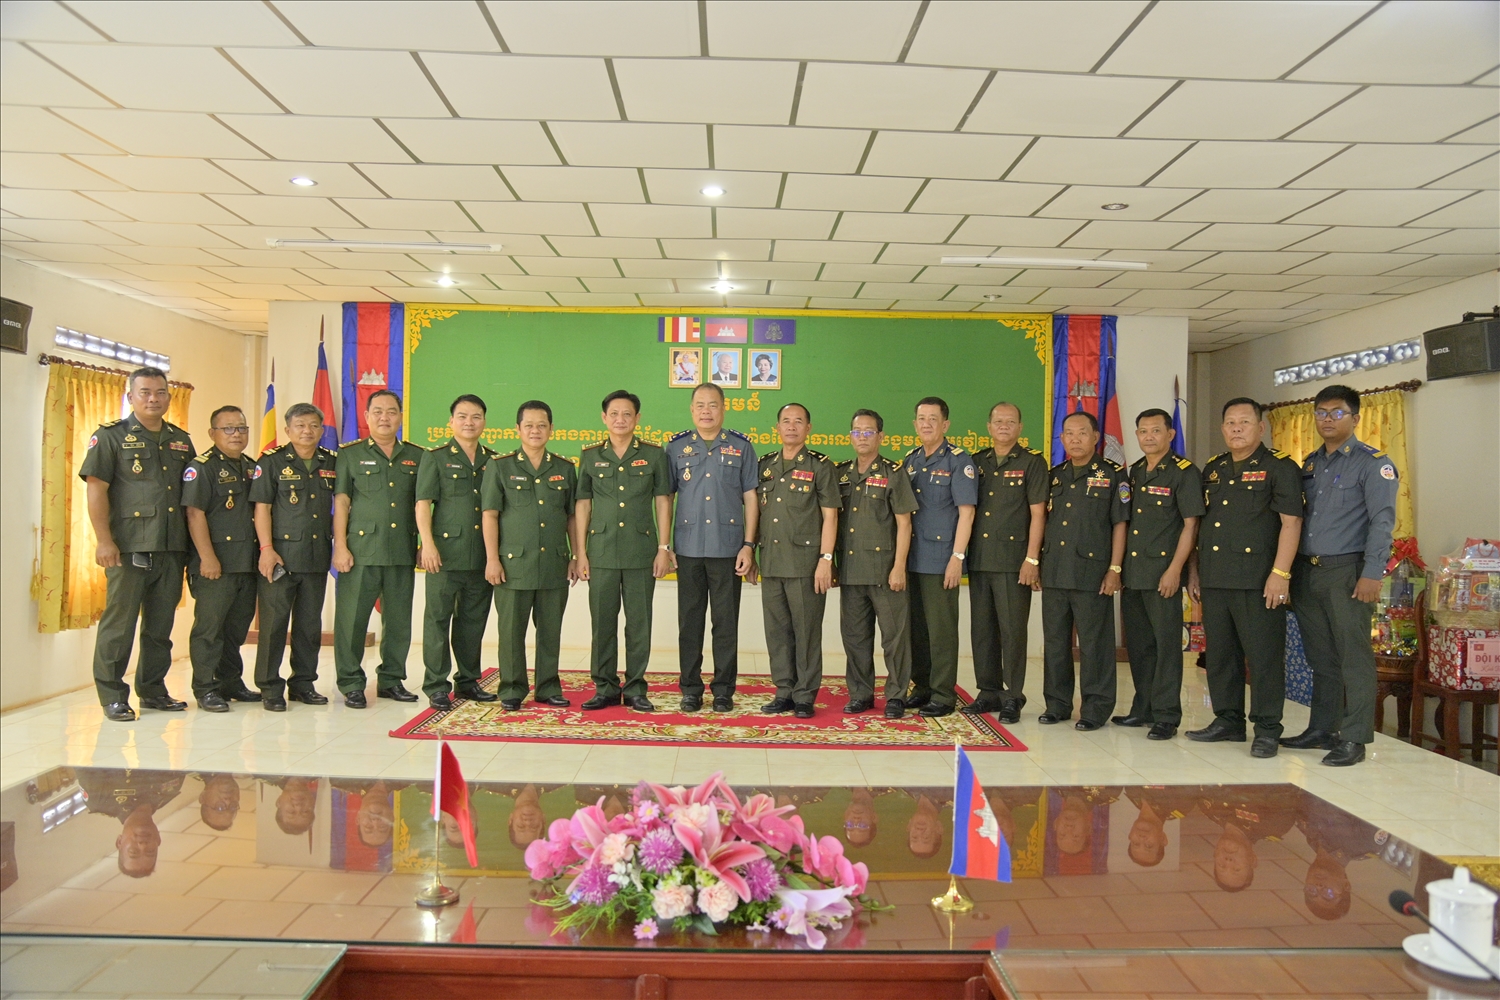 Đoàn công tác chụp ảnh lưu niệm cùng cán bộ, chiến sĩ Tiểu đoàn trấn áp tội phạm và Tiểu khu Quân sự tỉnh Sihanouk – Vương quốc Campuchia